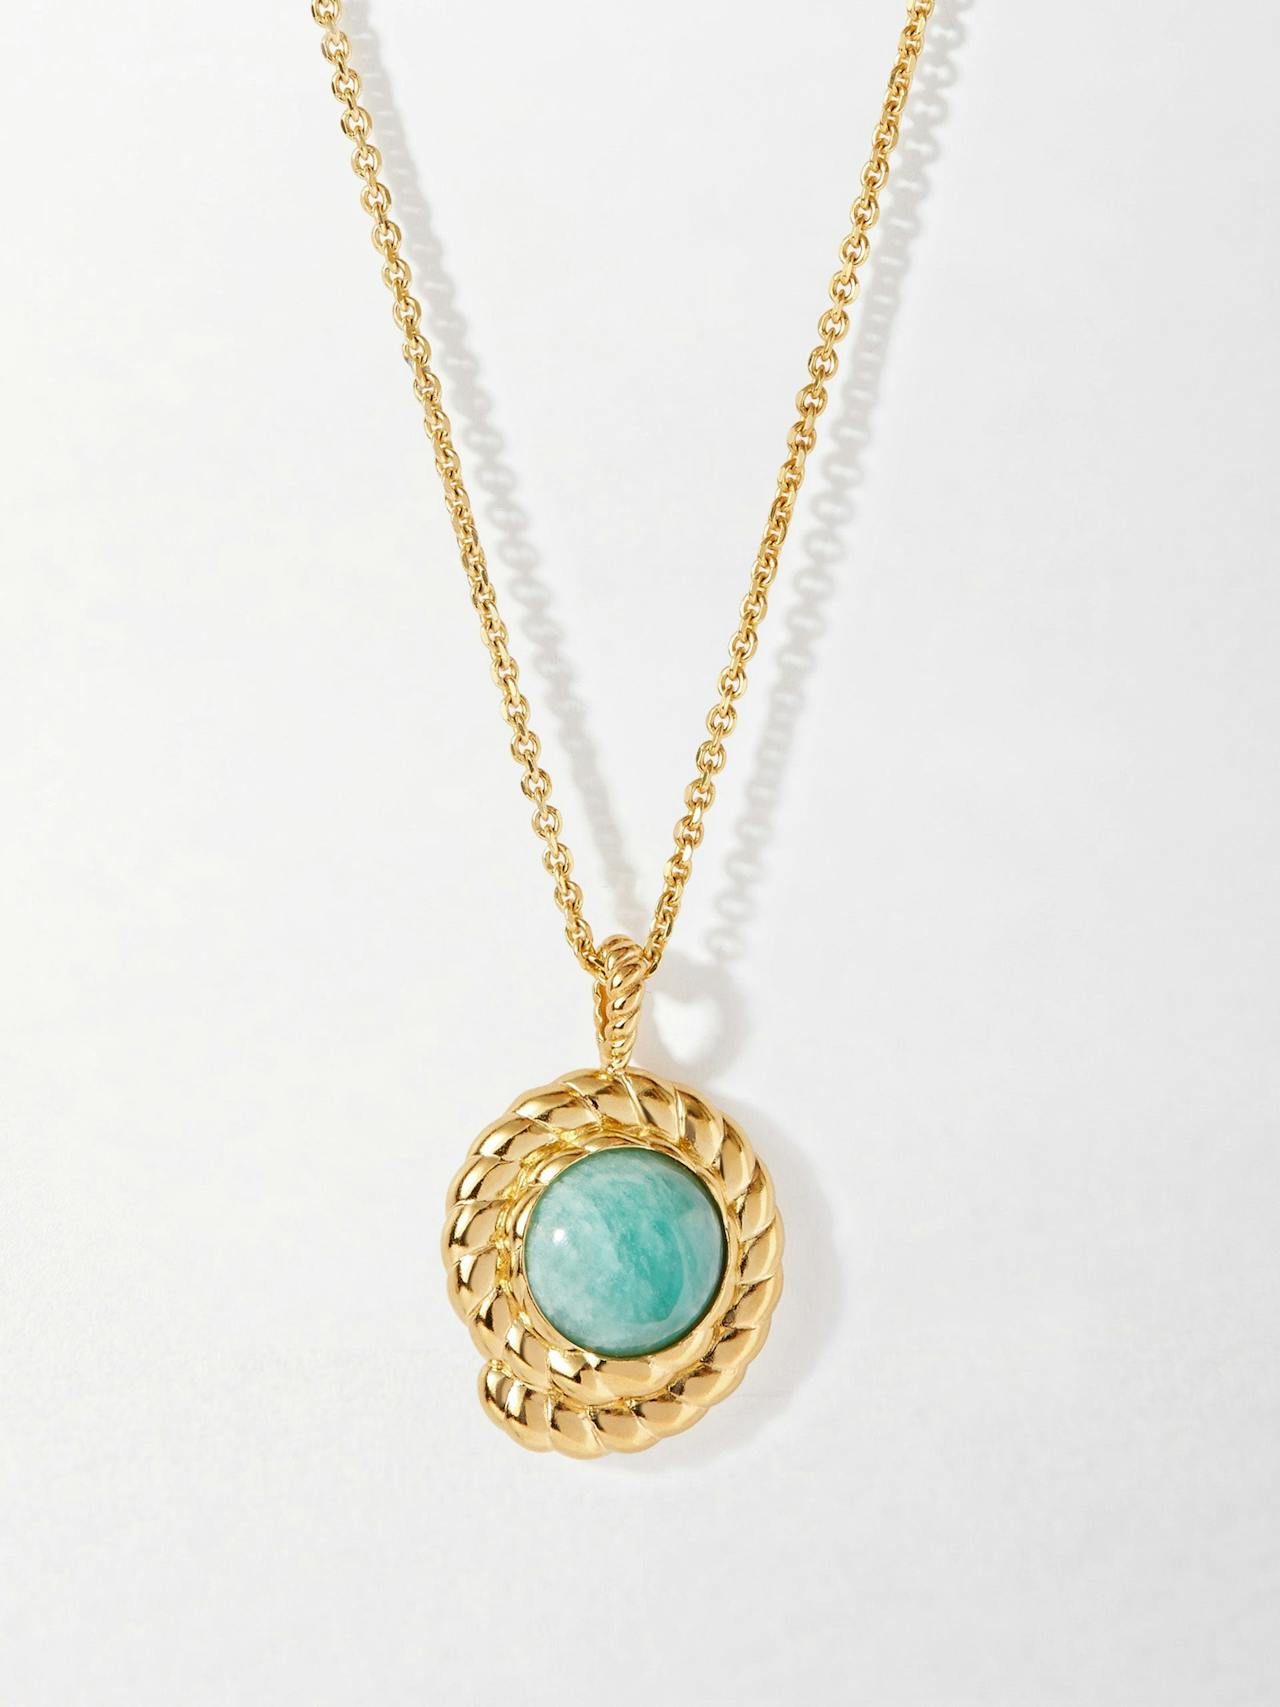 Azure amazonite necklace